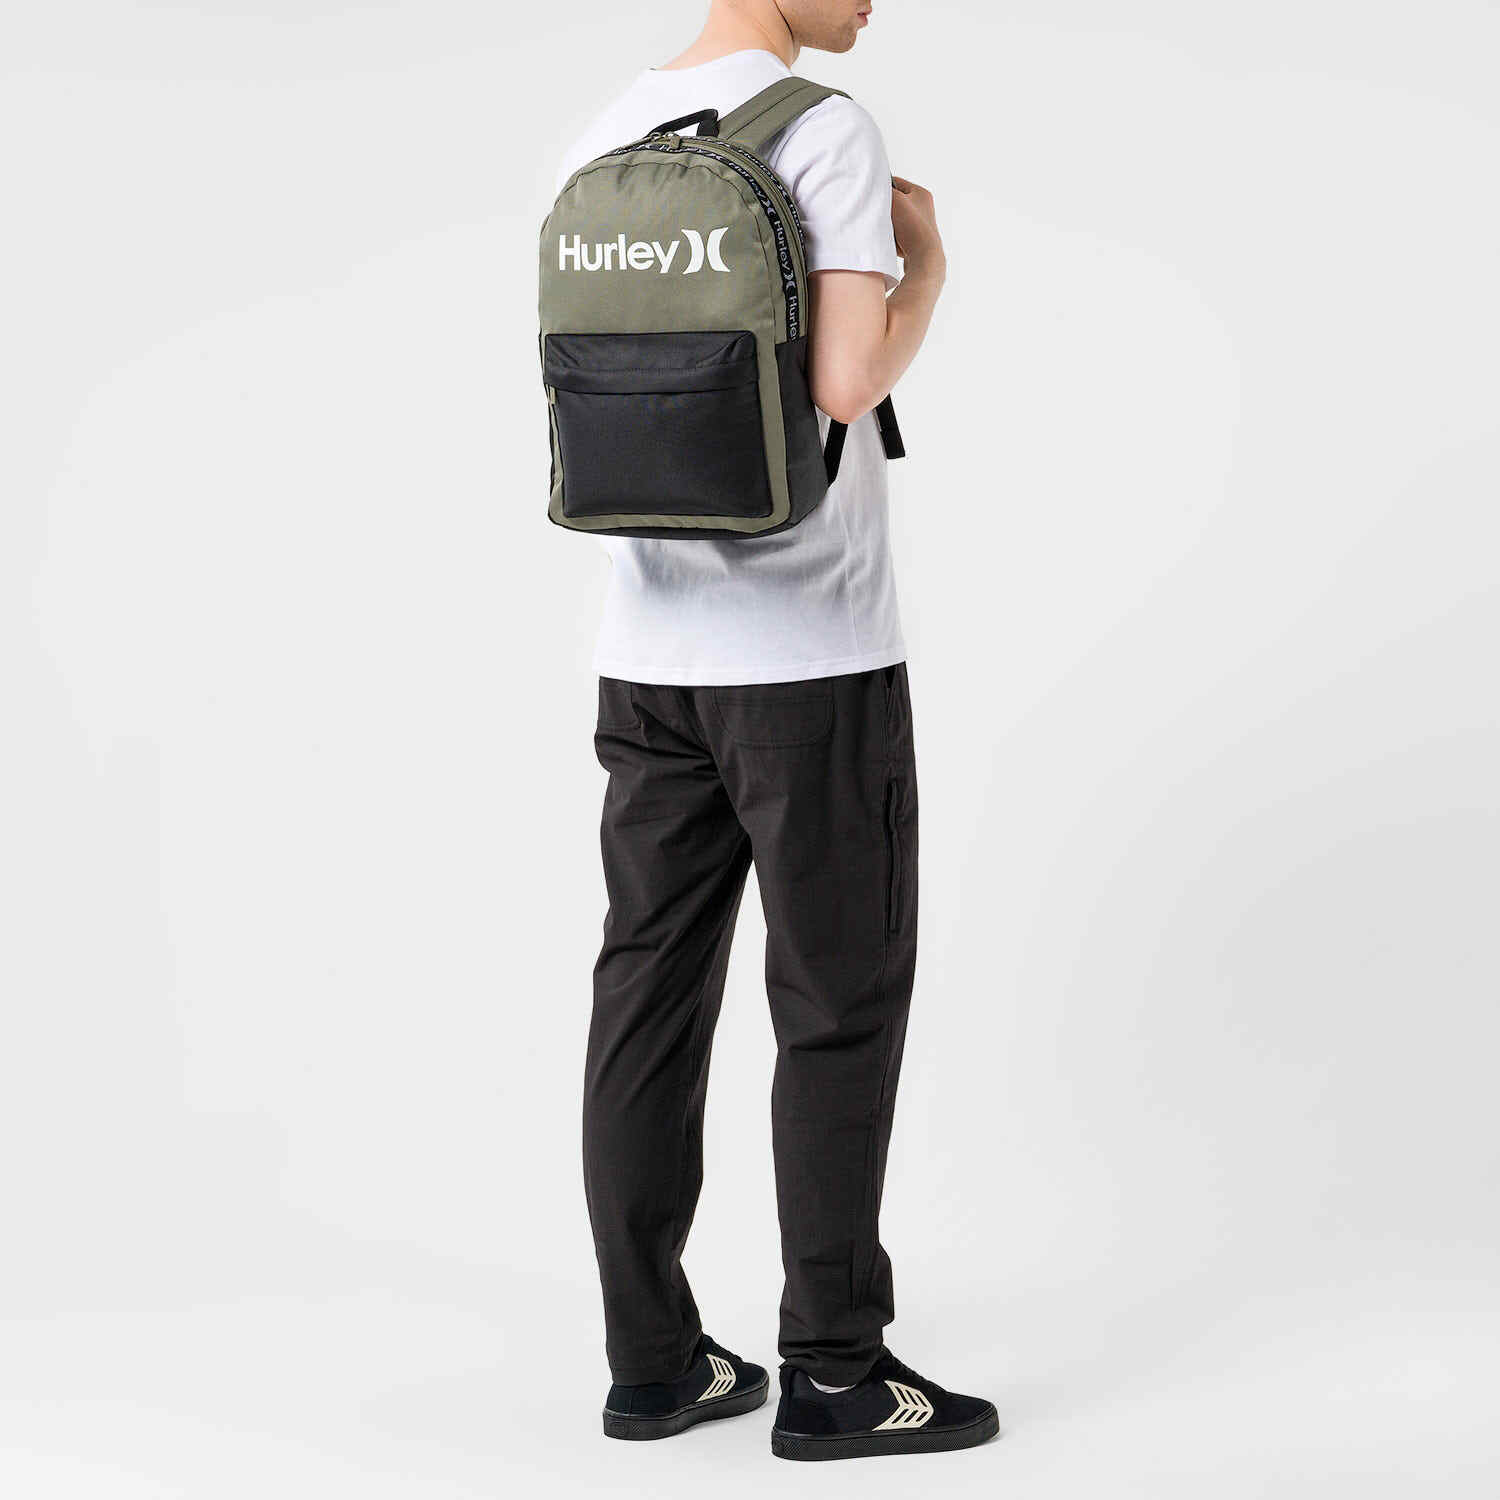 Backpack UNISEX - O&O taping